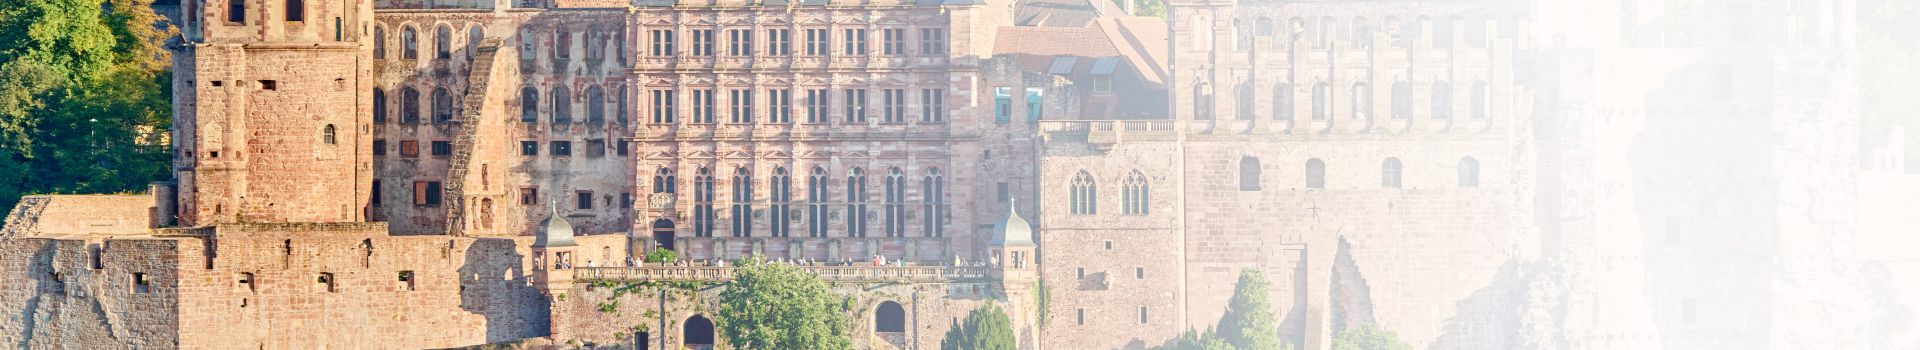 Luftaufnahme vom Schloss in Heidelberg